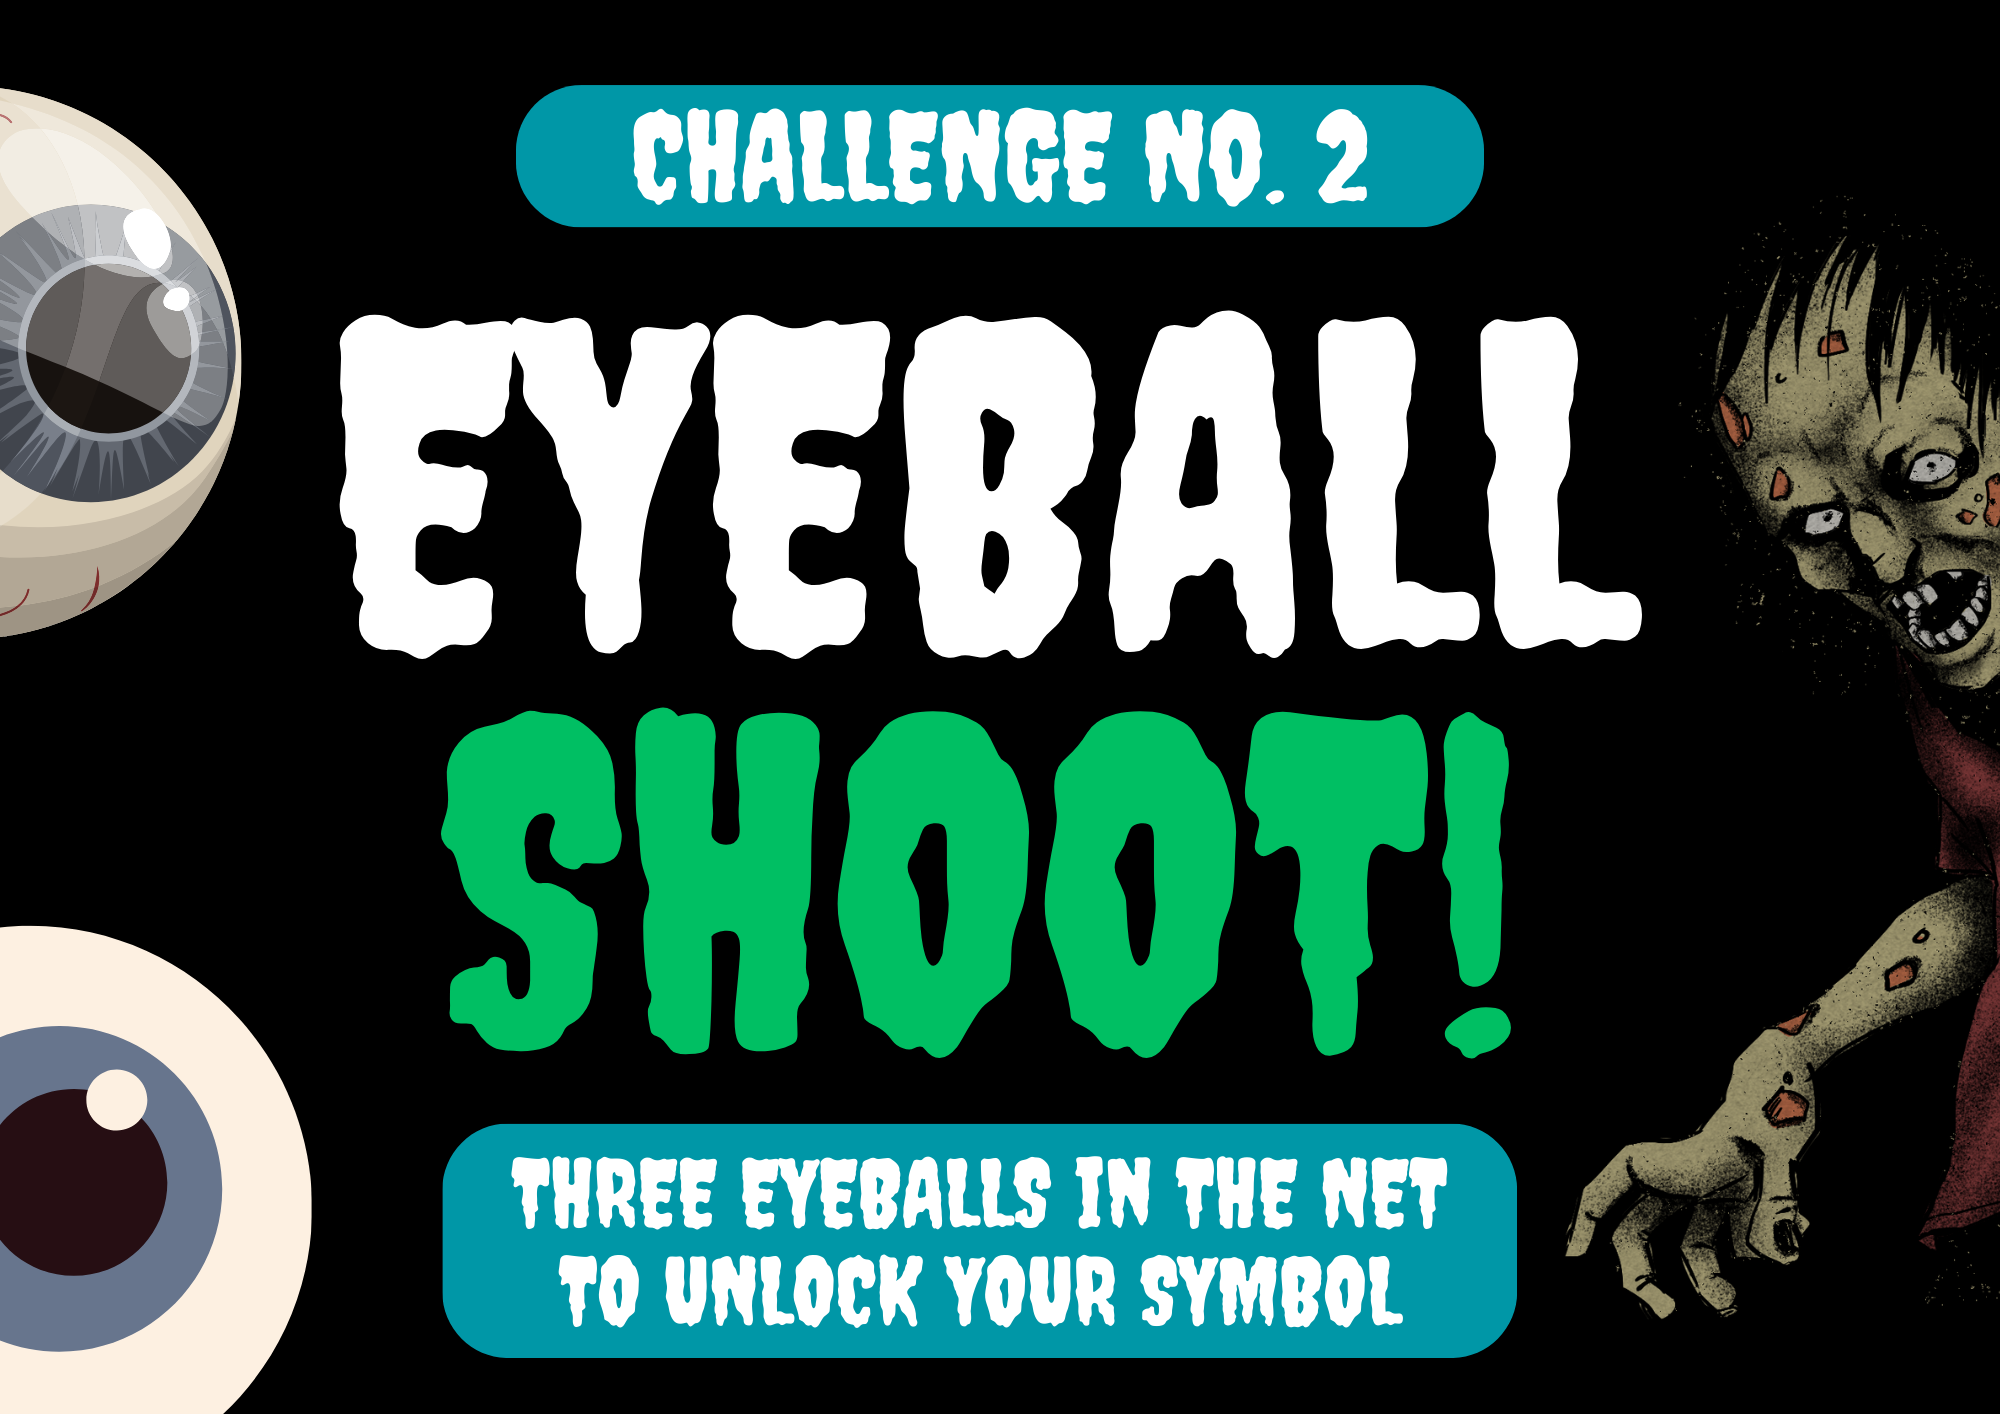 ZOMBIE CHALLENGE #2 (Eyeball Shoot)